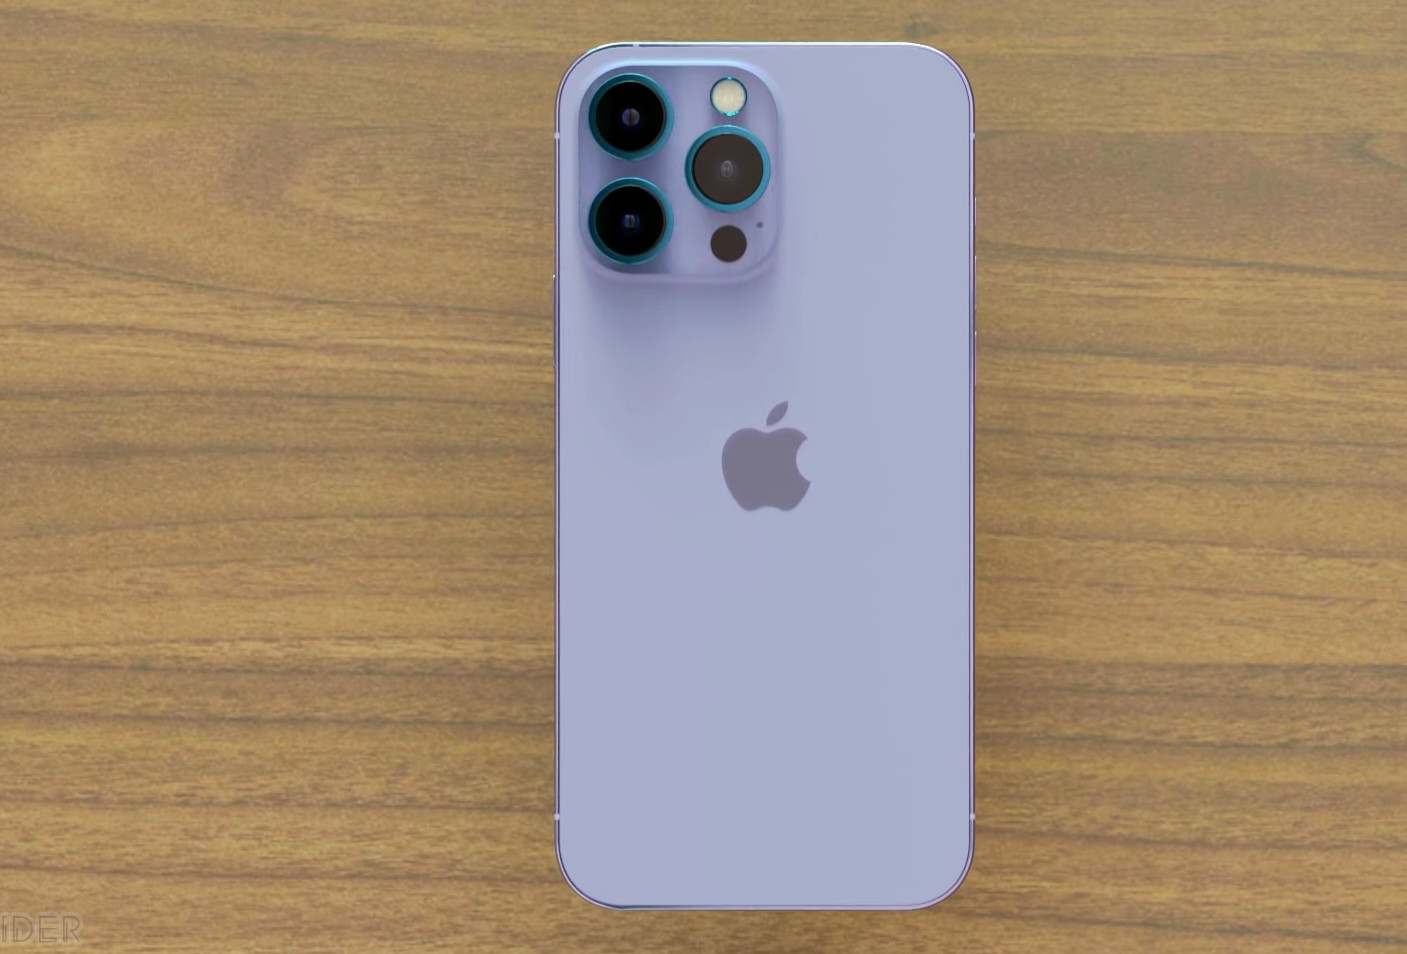 Cho dù bạn là fan hâm mộ của thương hiệu Apple hay không, iPhone 14 Pro Max màu tím trong video mới chắc chắn sẽ khiến bạn cảm thấy thích thú. Chiếc điện thoại này là sự kết hợp hoàn hảo giữa thiết kế đẹp mắt với nhiều tính năng tiên tiến và công nghệ đột phá. Hãy xem qua video mới để trải nghiệm những điều tuyệt vời mà iPhone 14 Pro Max màu tím mang lại.